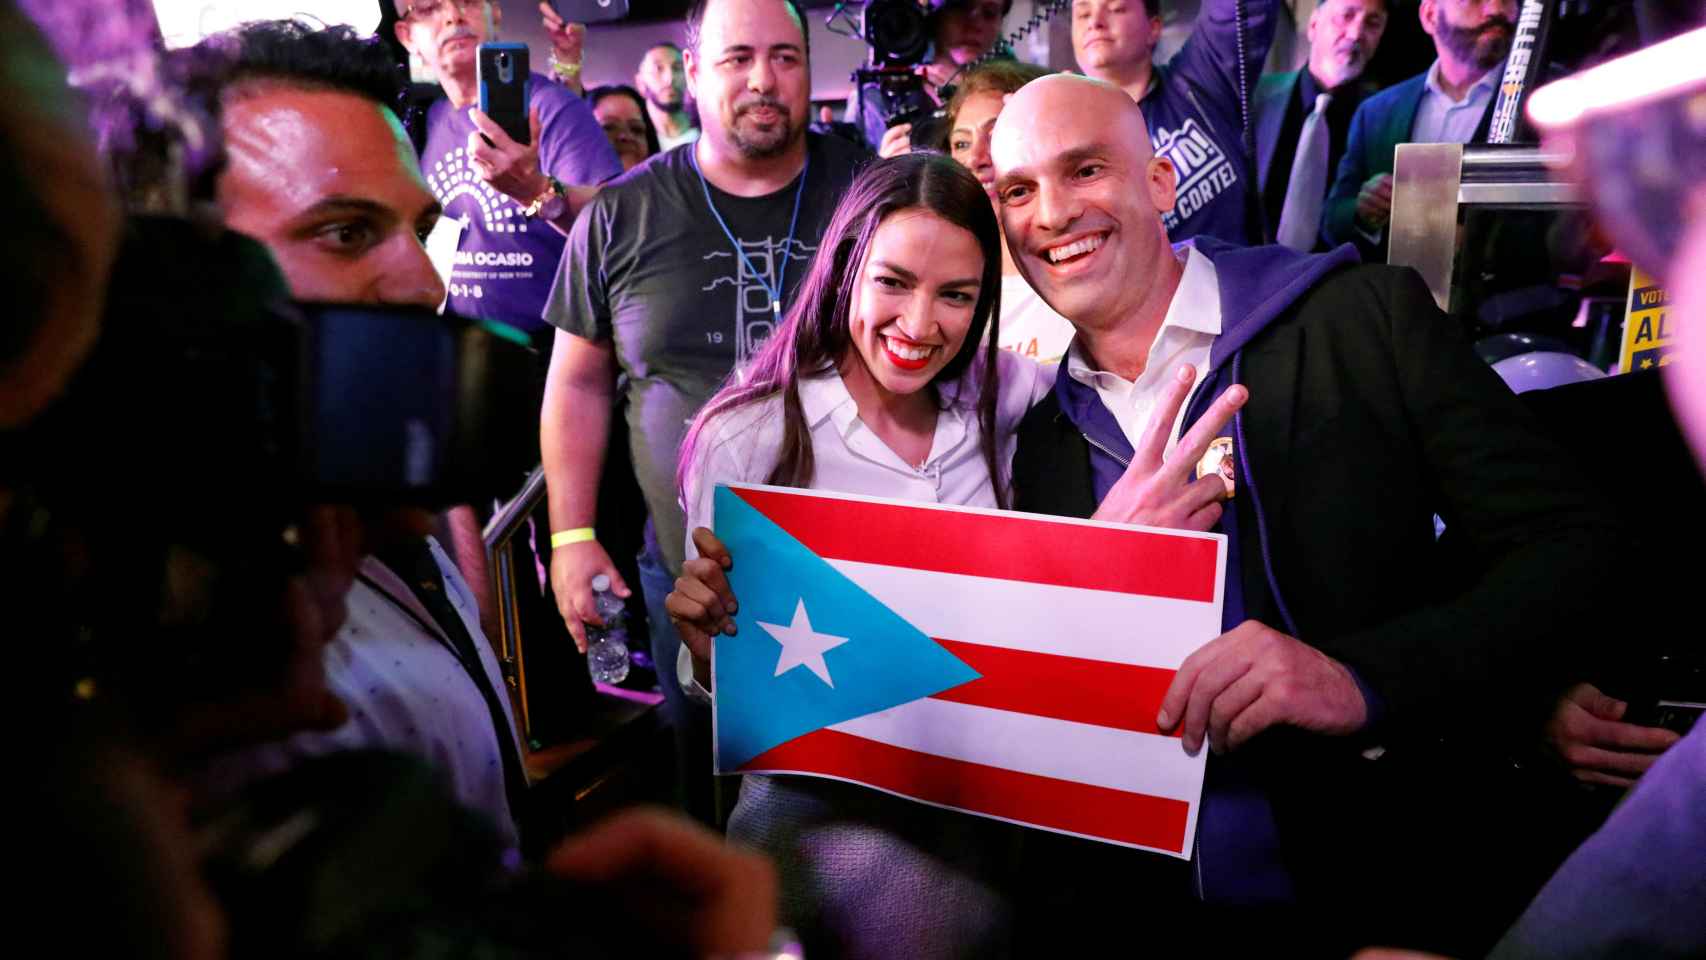 Alexandria Ocasio con una bandera de Puerto Rico.